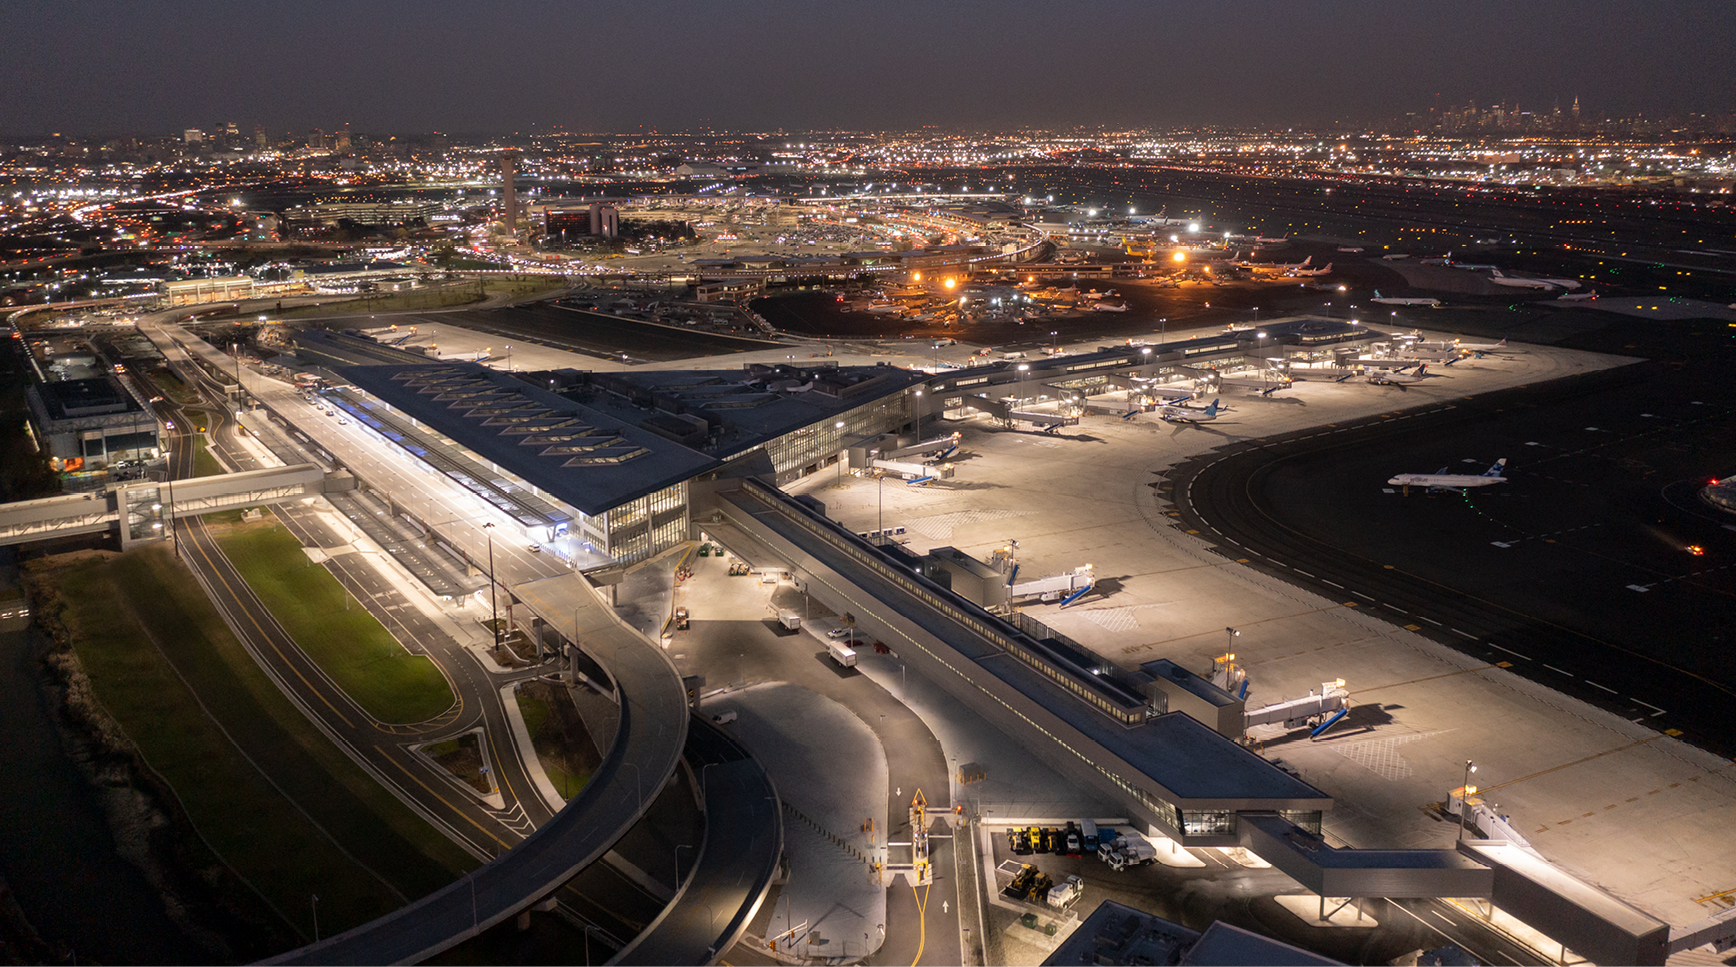 El aeropuerto de Newark, líder en sostenibilidad con la instalación del vidrio fotovoltaico de onyx solar